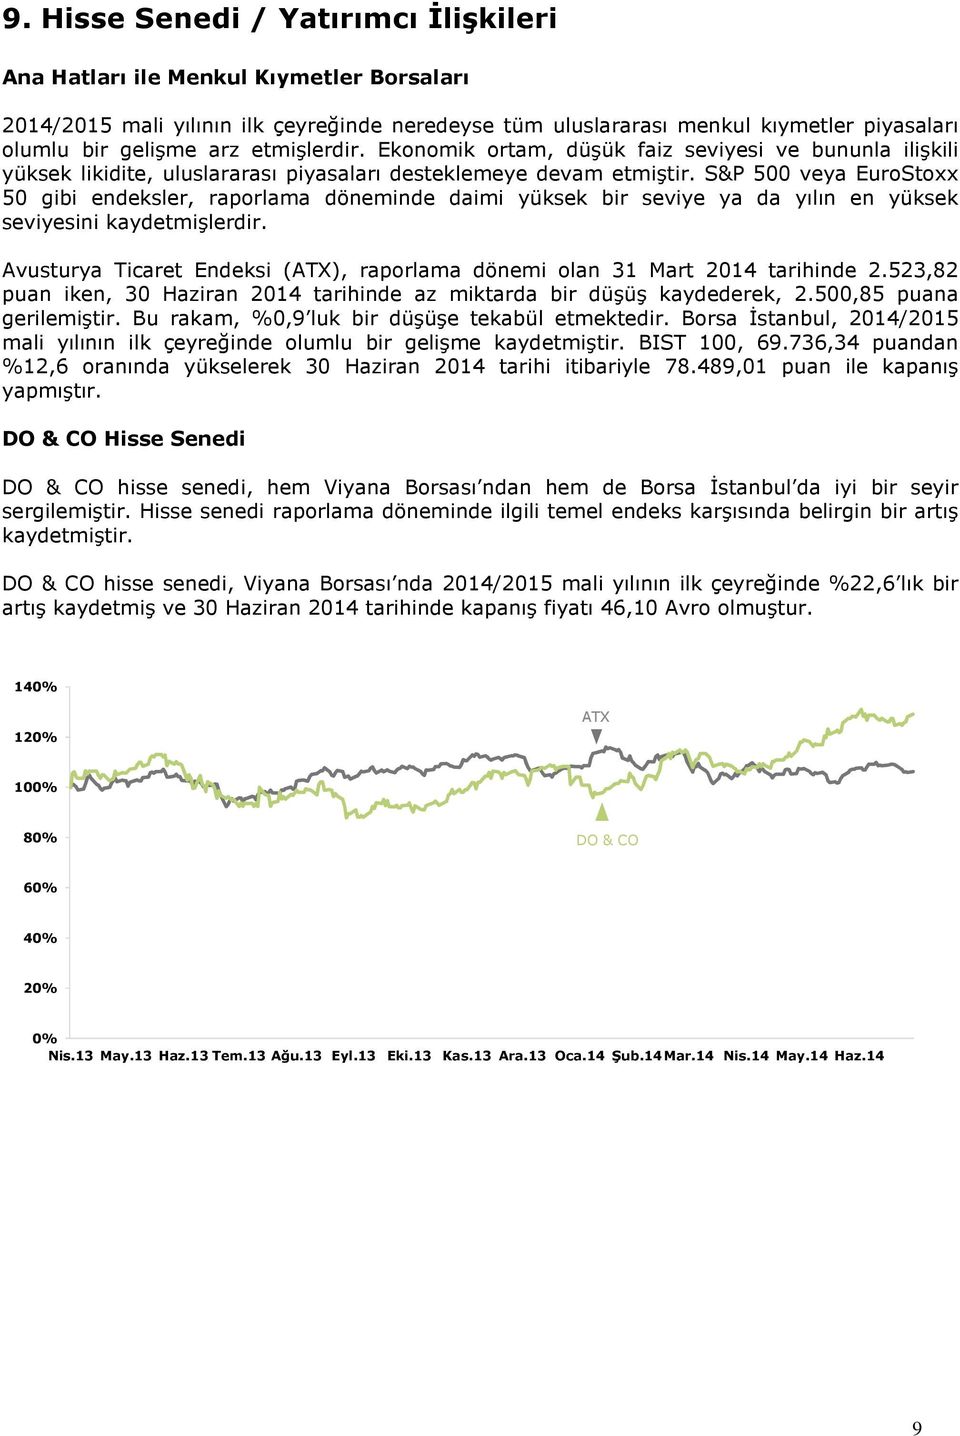 S&P 500 veya EuroStoxx 50 gibi endeksler, raporlama döneminde daimi yüksek bir seviye ya da yılın en yüksek seviyesini kaydetmişlerdir.